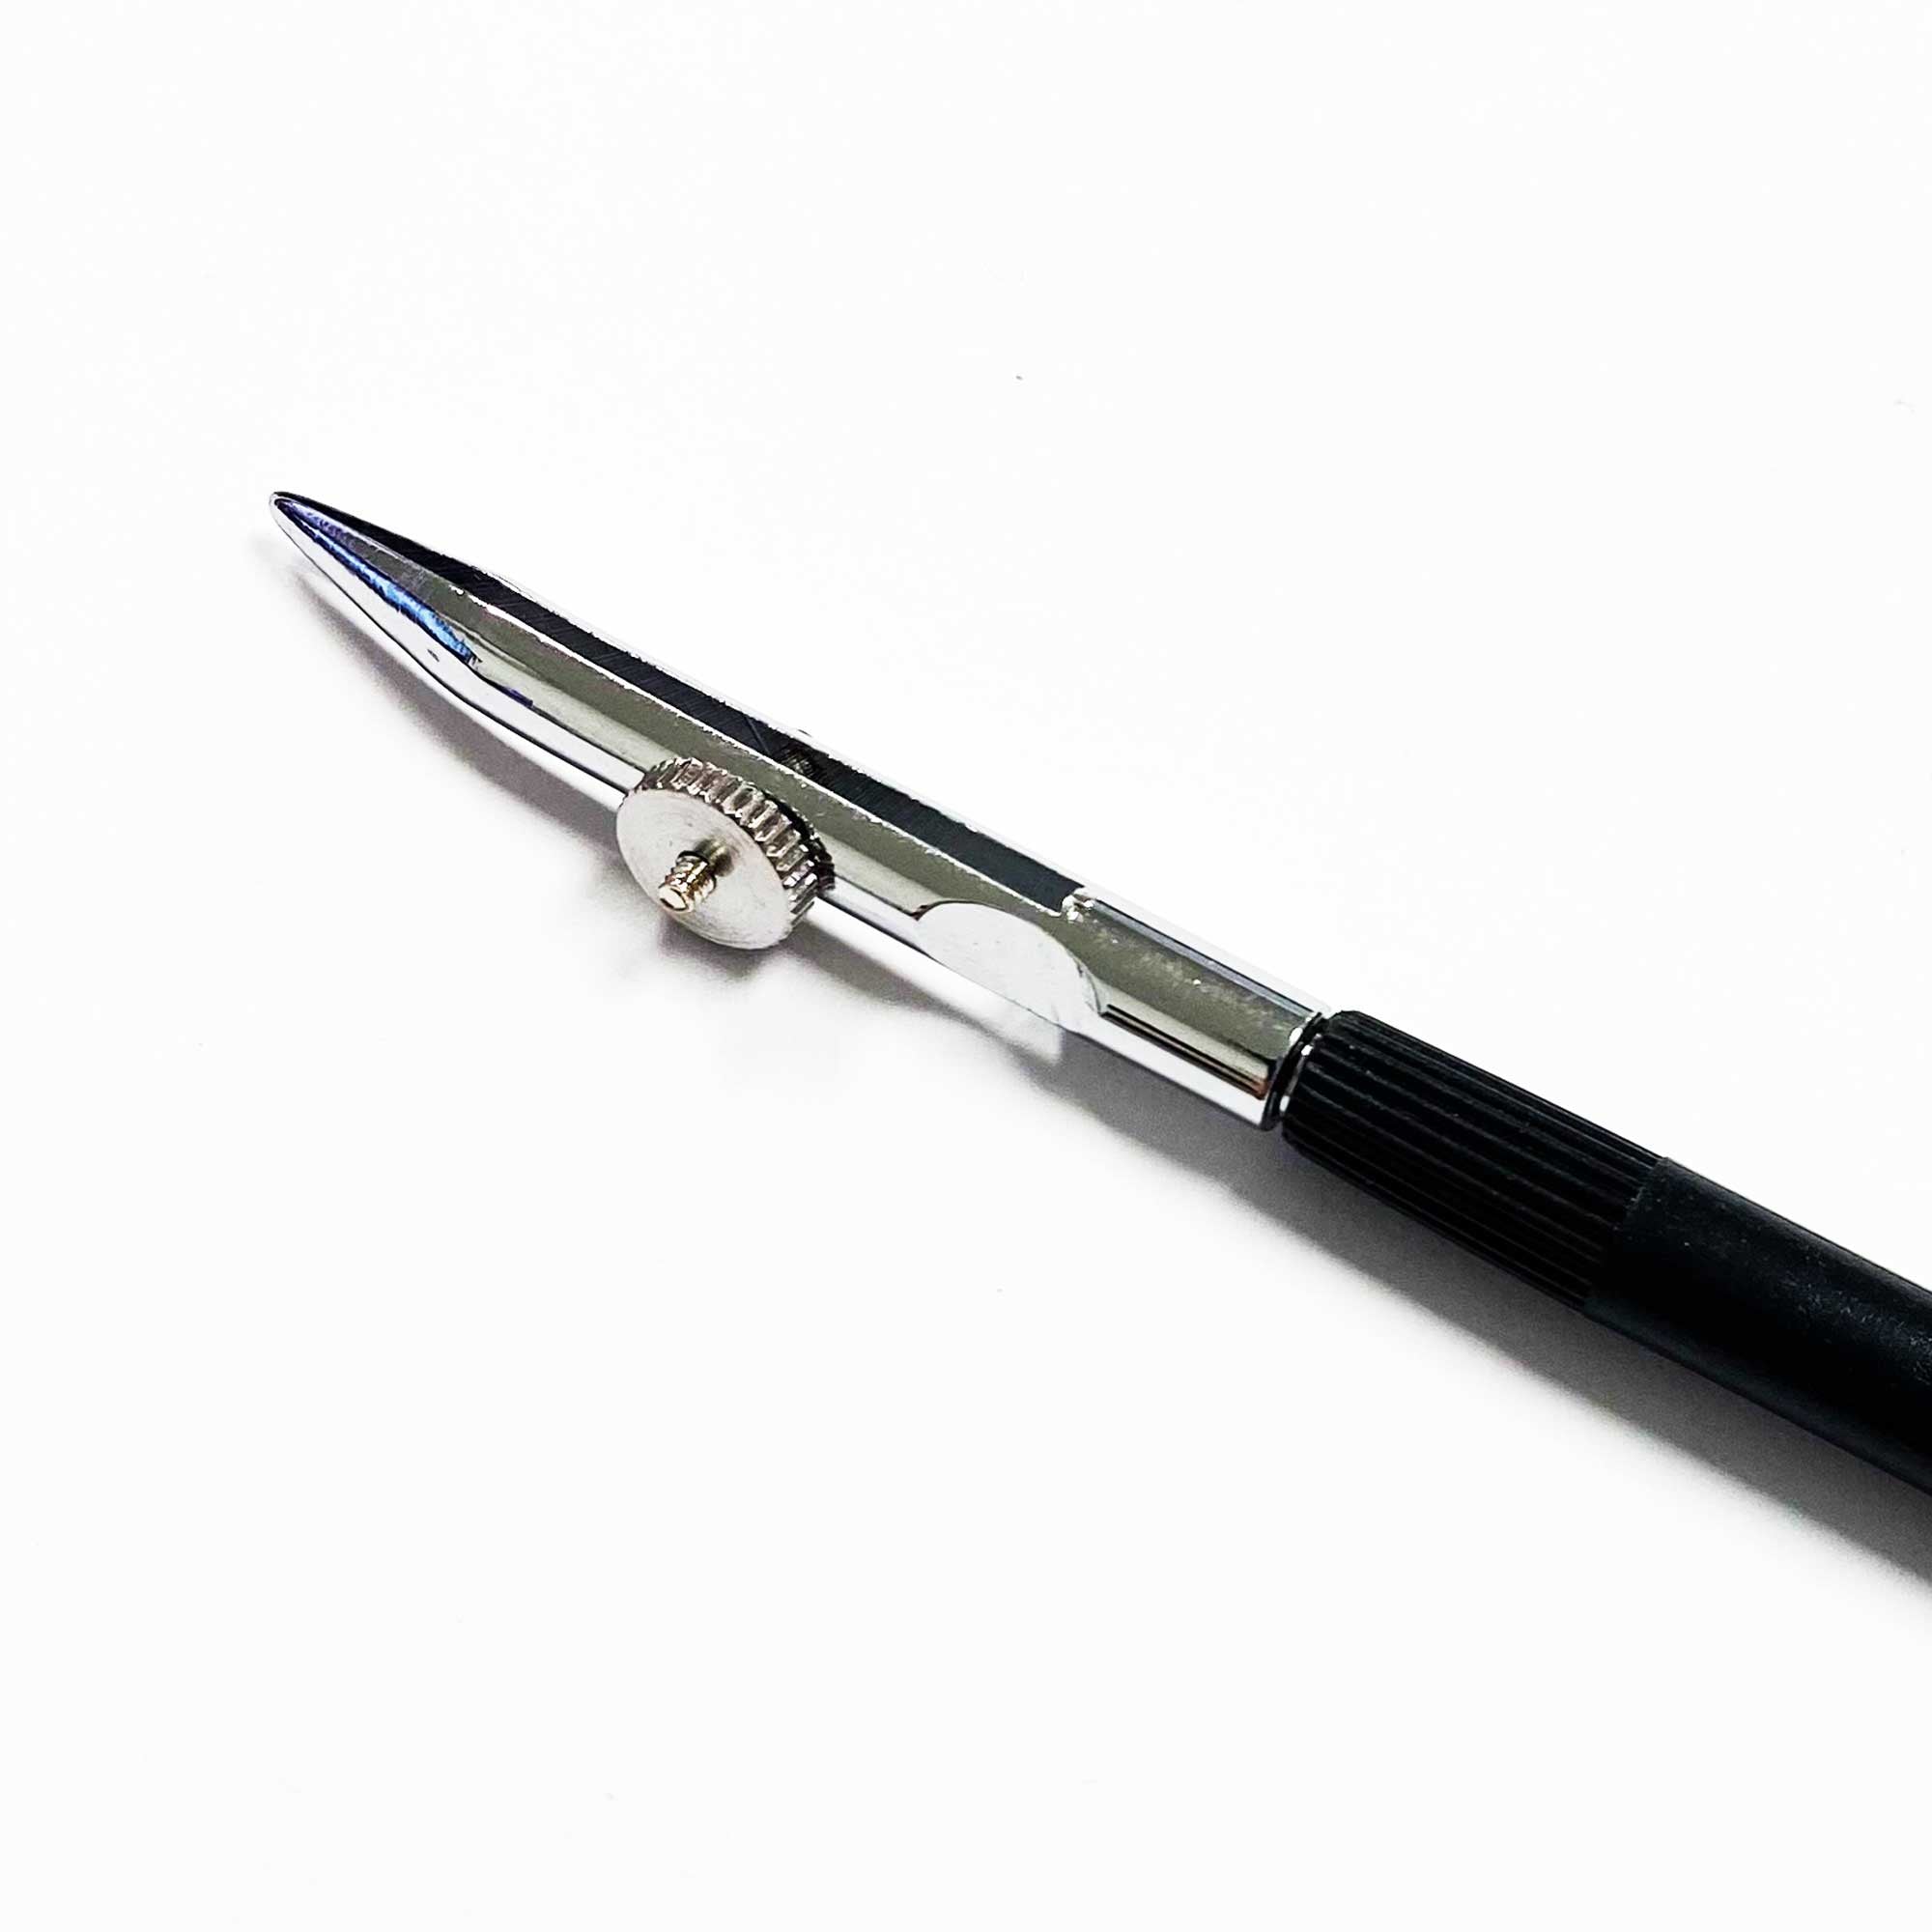 Art Ruling Pen